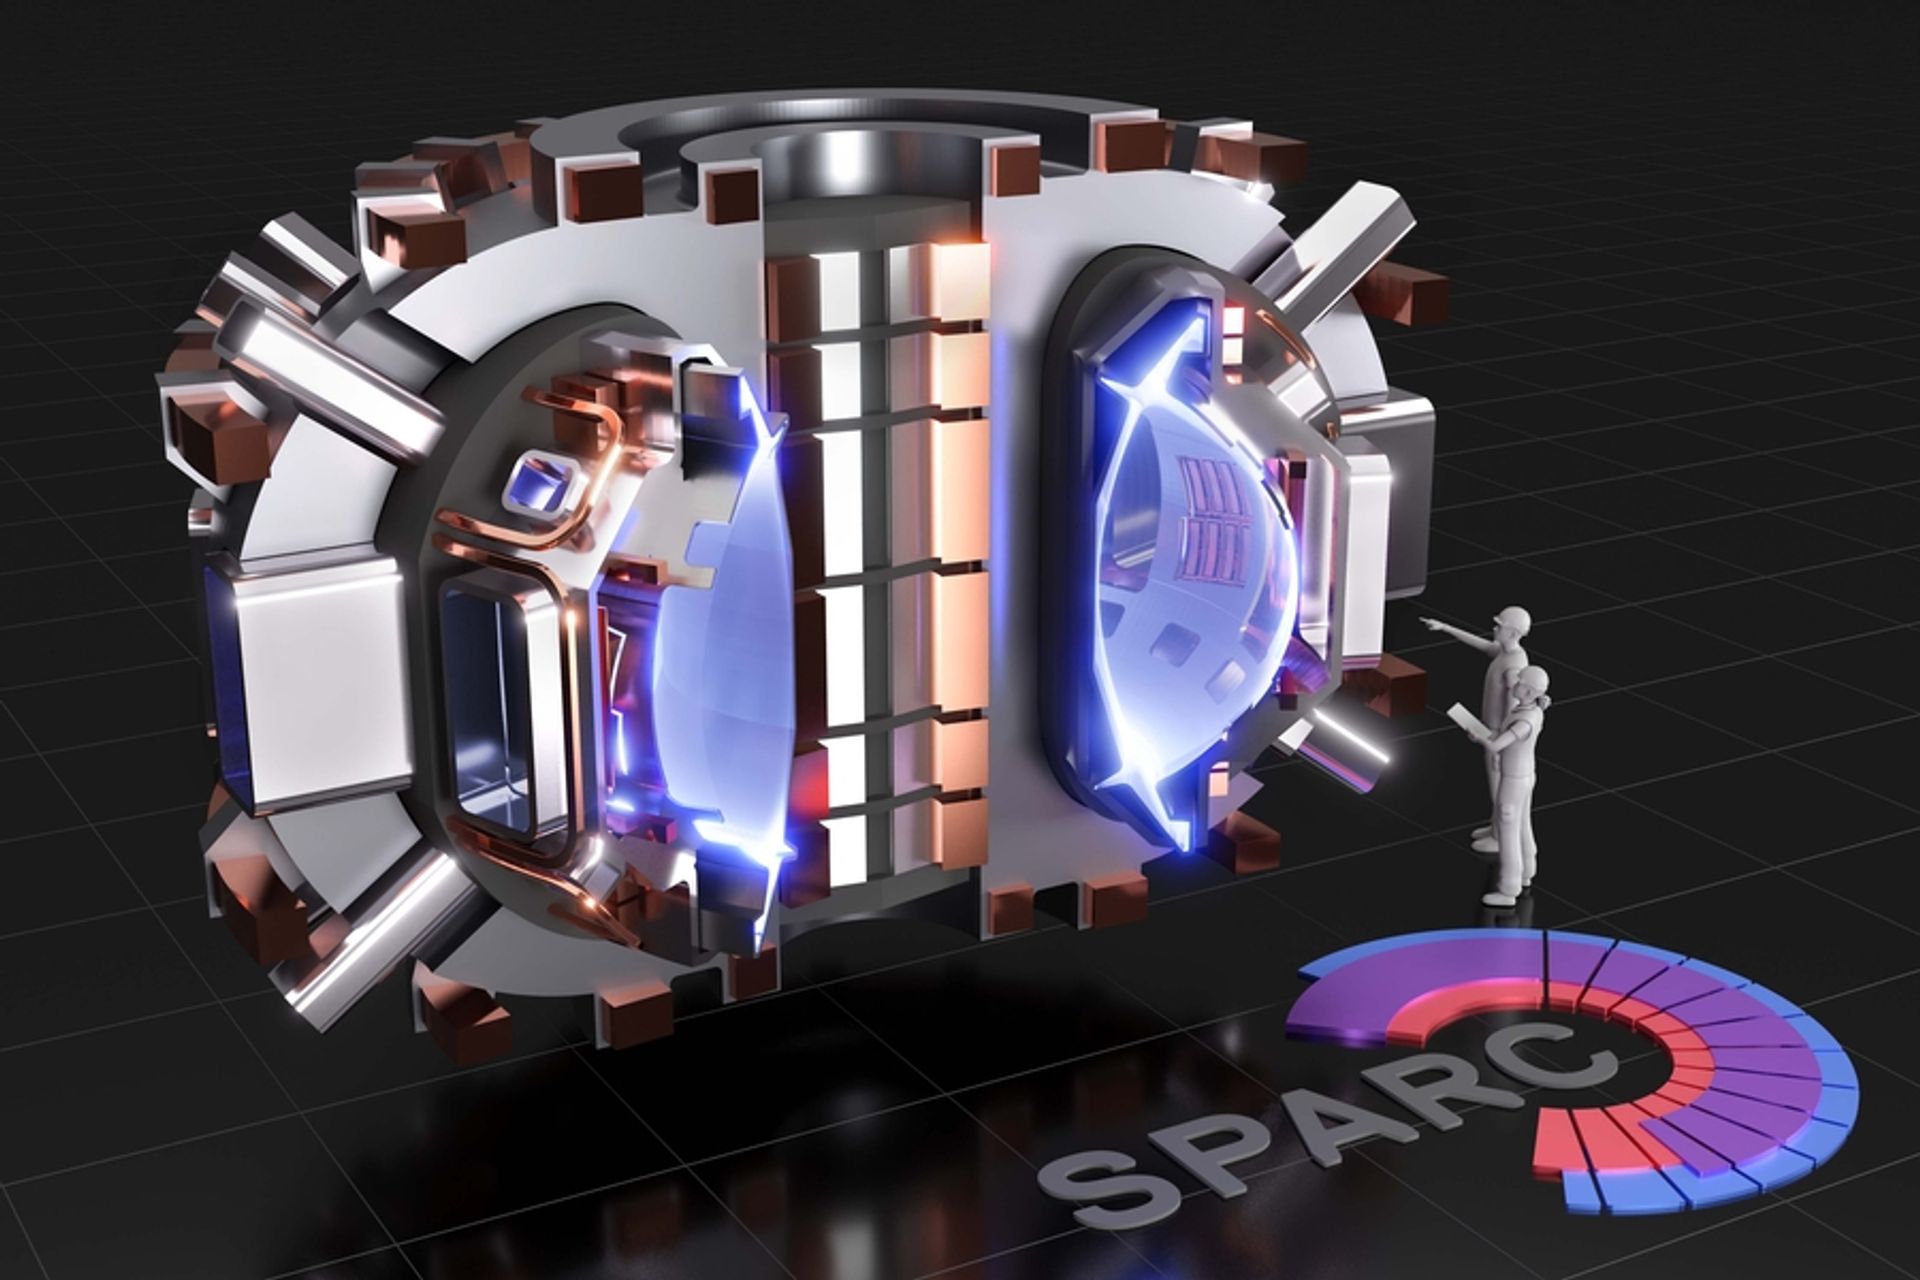 ການສະແດງຂອງ SPARC, tokamak ພາກສະຫນາມສູງທີ່ຫນາແຫນ້ນ, ປະຈຸບັນພາຍໃຕ້ການອອກແບບໂດຍທີມງານຂອງສະຖາບັນເຕັກໂນໂລຊີ Massachusetts ແລະ Commonwealth Fusion Systems: ພາລະກິດຂອງມັນແມ່ນການສ້າງແລະຈໍາກັດ plasma ທີ່ຜະລິດພະລັງງານ fusion ສຸດທິ. (ຮູບ: T. Henderson, CFS/MIT-PSFC, 2020)